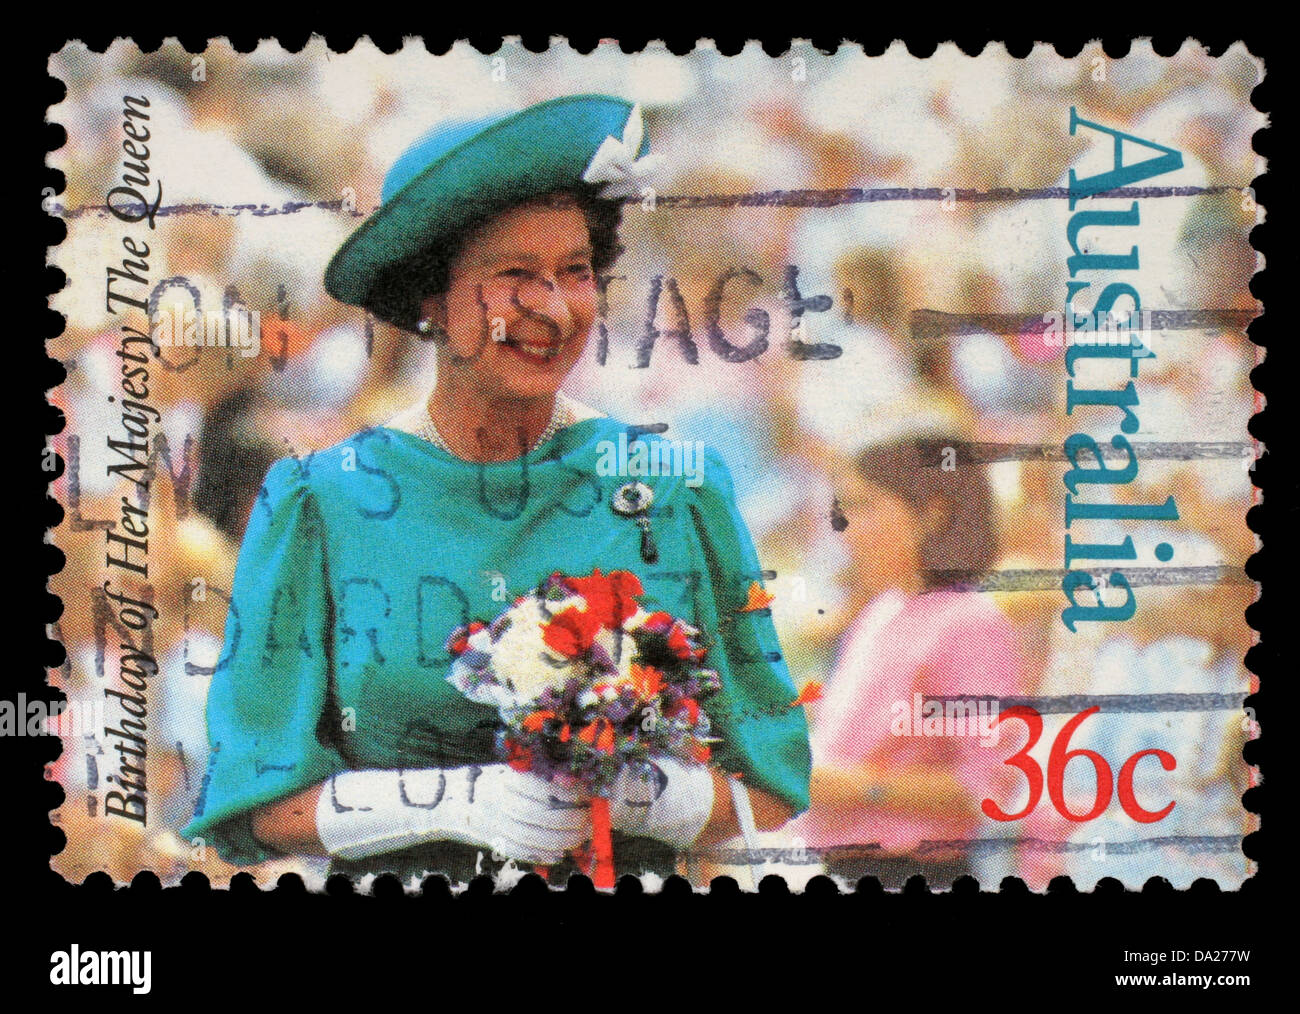 L'AUSTRALIE - circa 1987 : timbres par l'Australie, montre la reine Elizabeth II, circa 1987 Banque D'Images